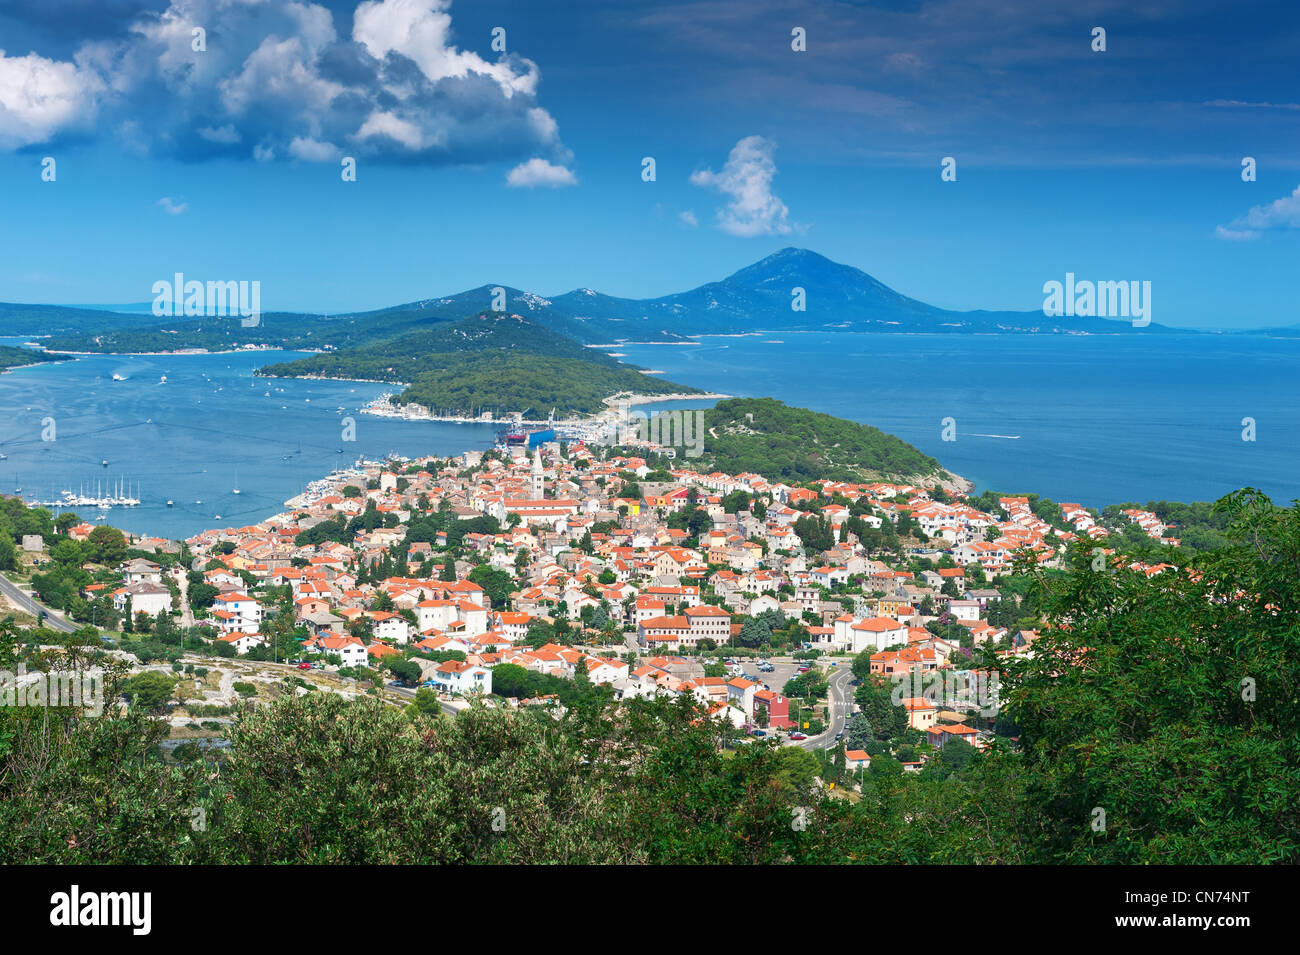 Vieille ville sur l'île Adriatique sous ciel bleu. Mali Losinj, Croatie, destination touristique populaire. Banque D'Images